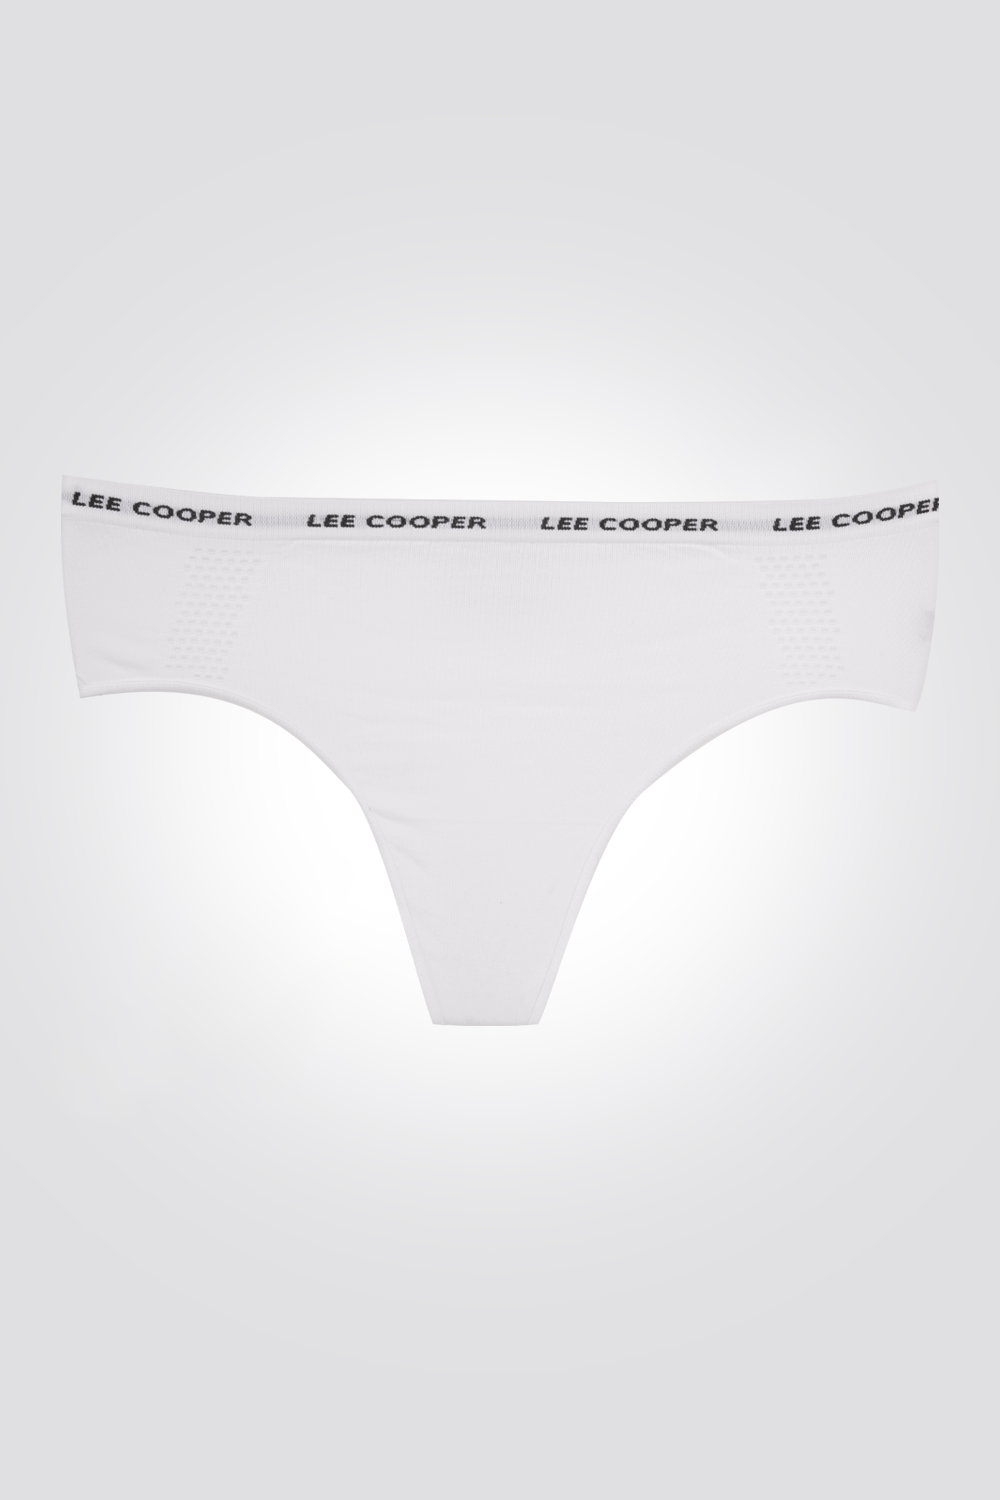 LEE COOPER - פיל קול תחתוני חוטיני היפסטרינג בצבע לבן - MASHBIR//365